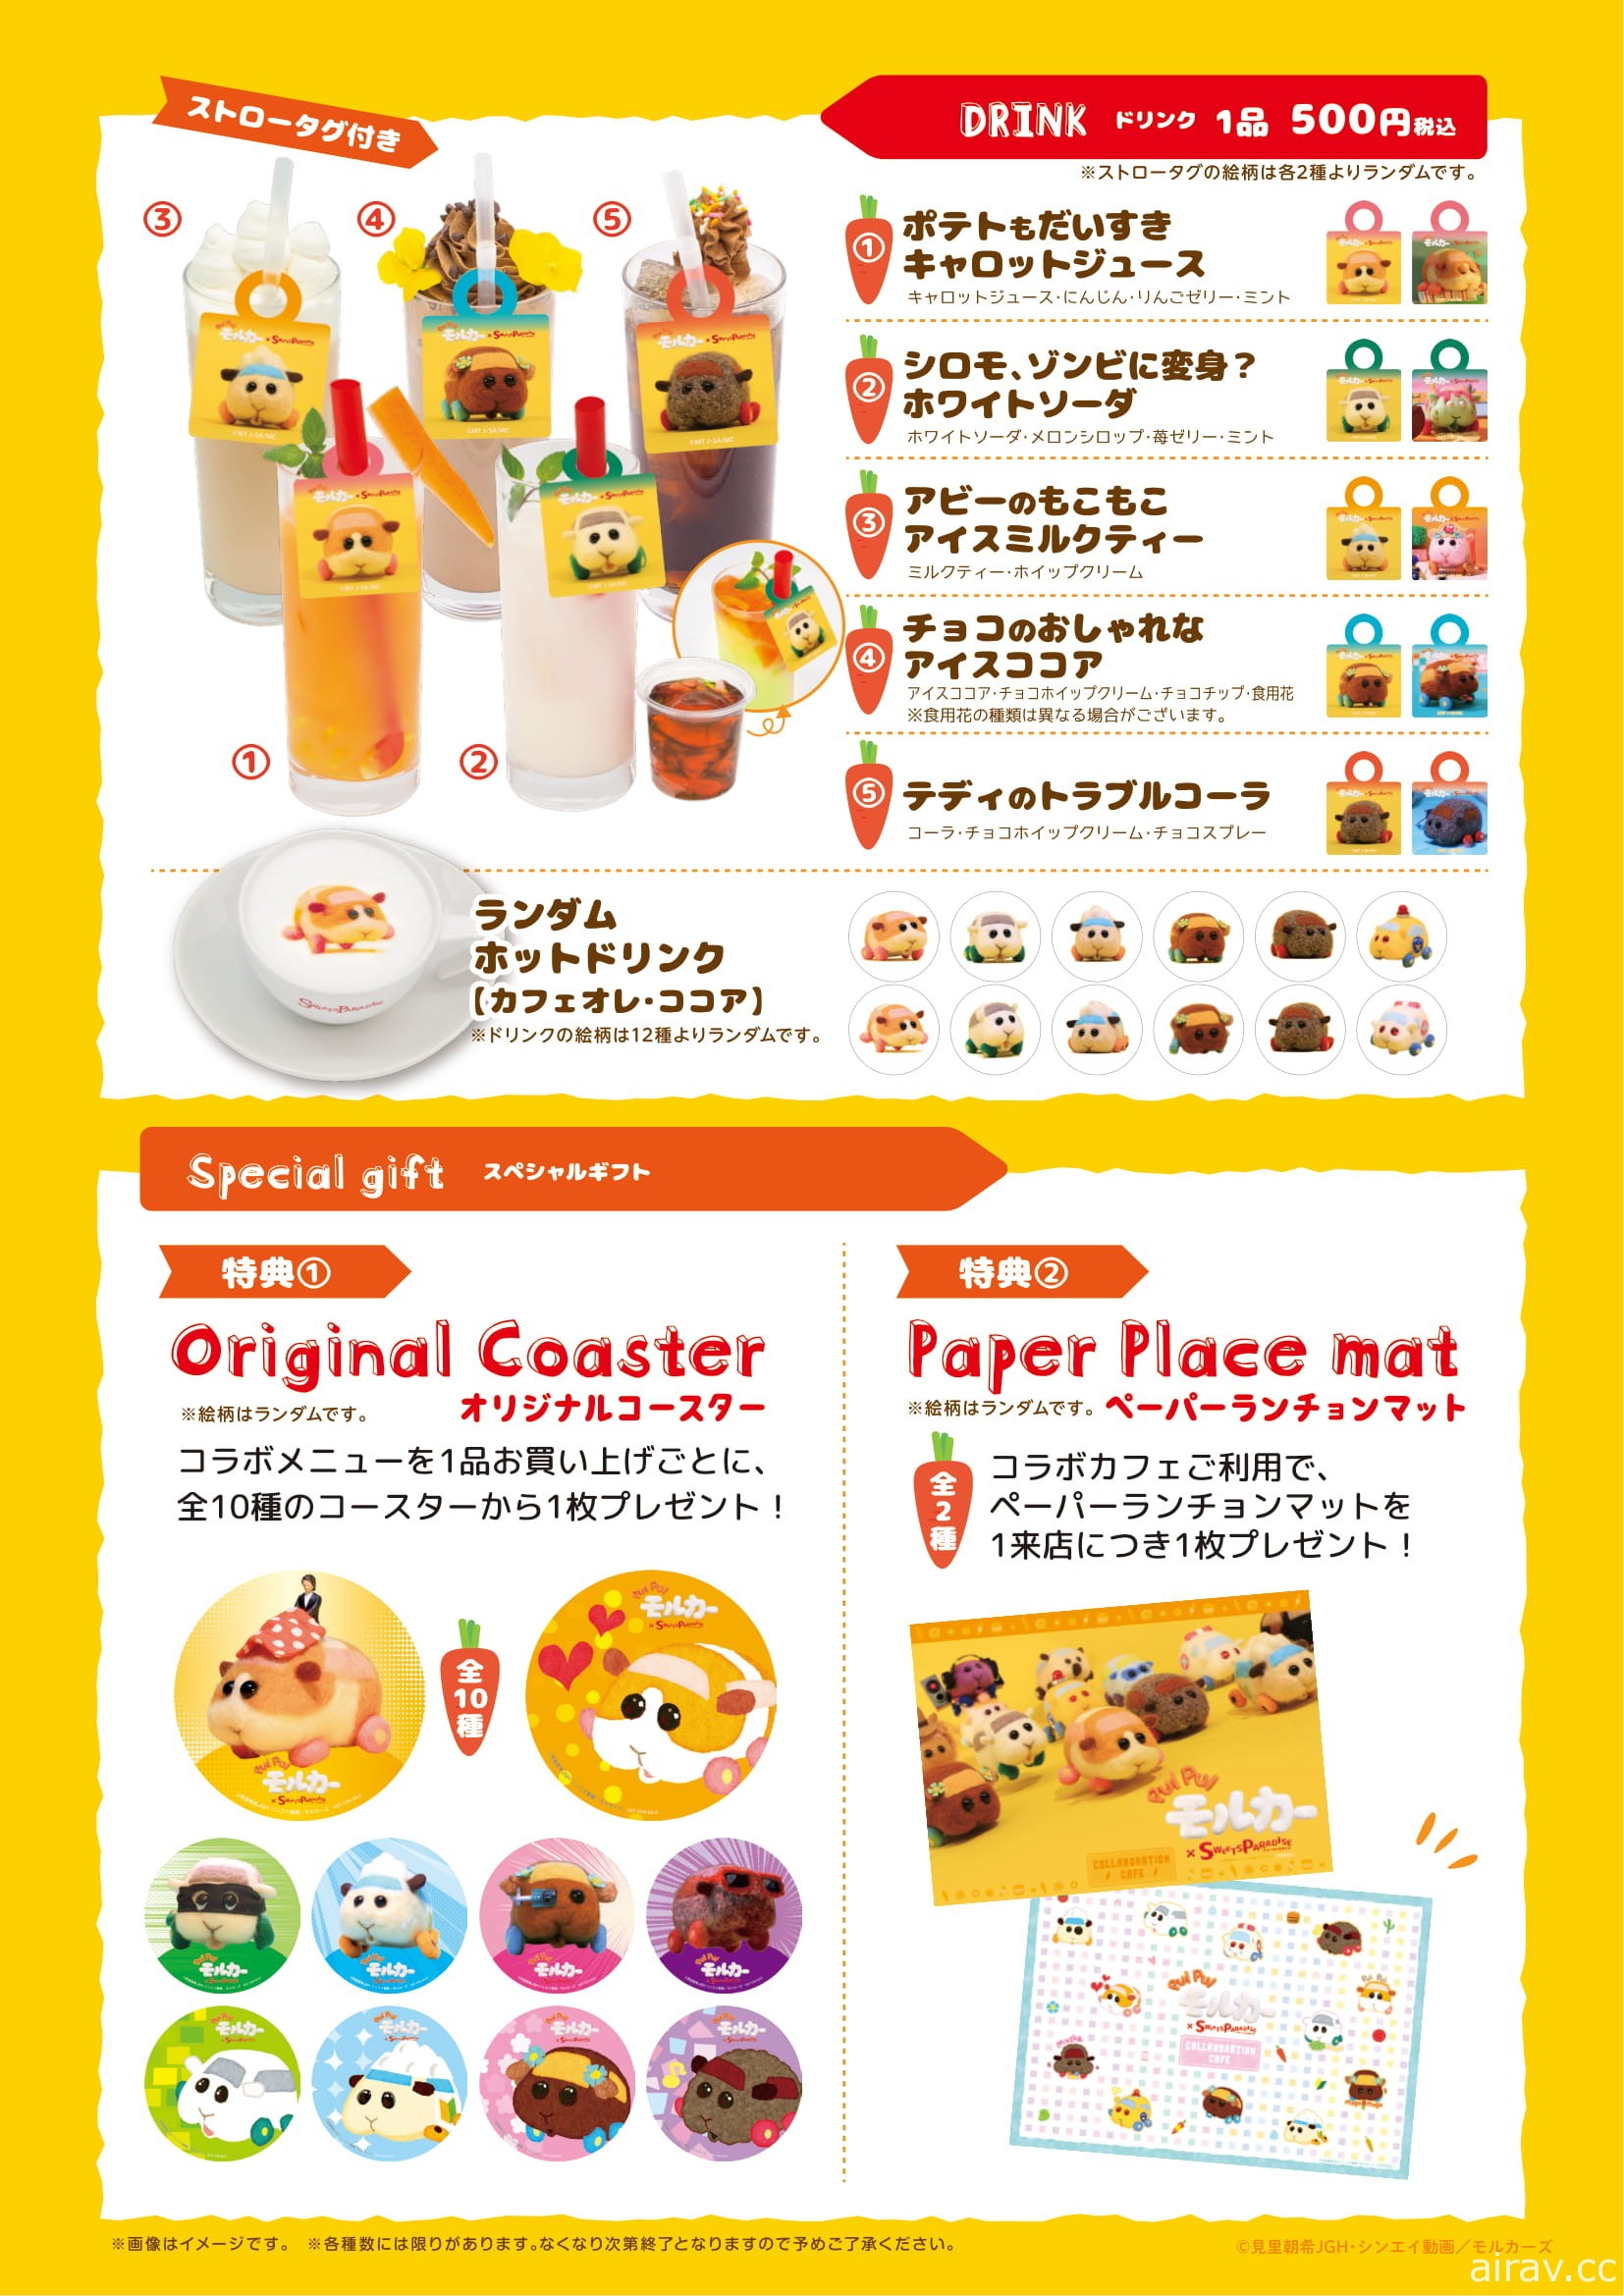 《天竺鼠車車》與日本甜點連鎖店合作推出期間限定餐點與周邊